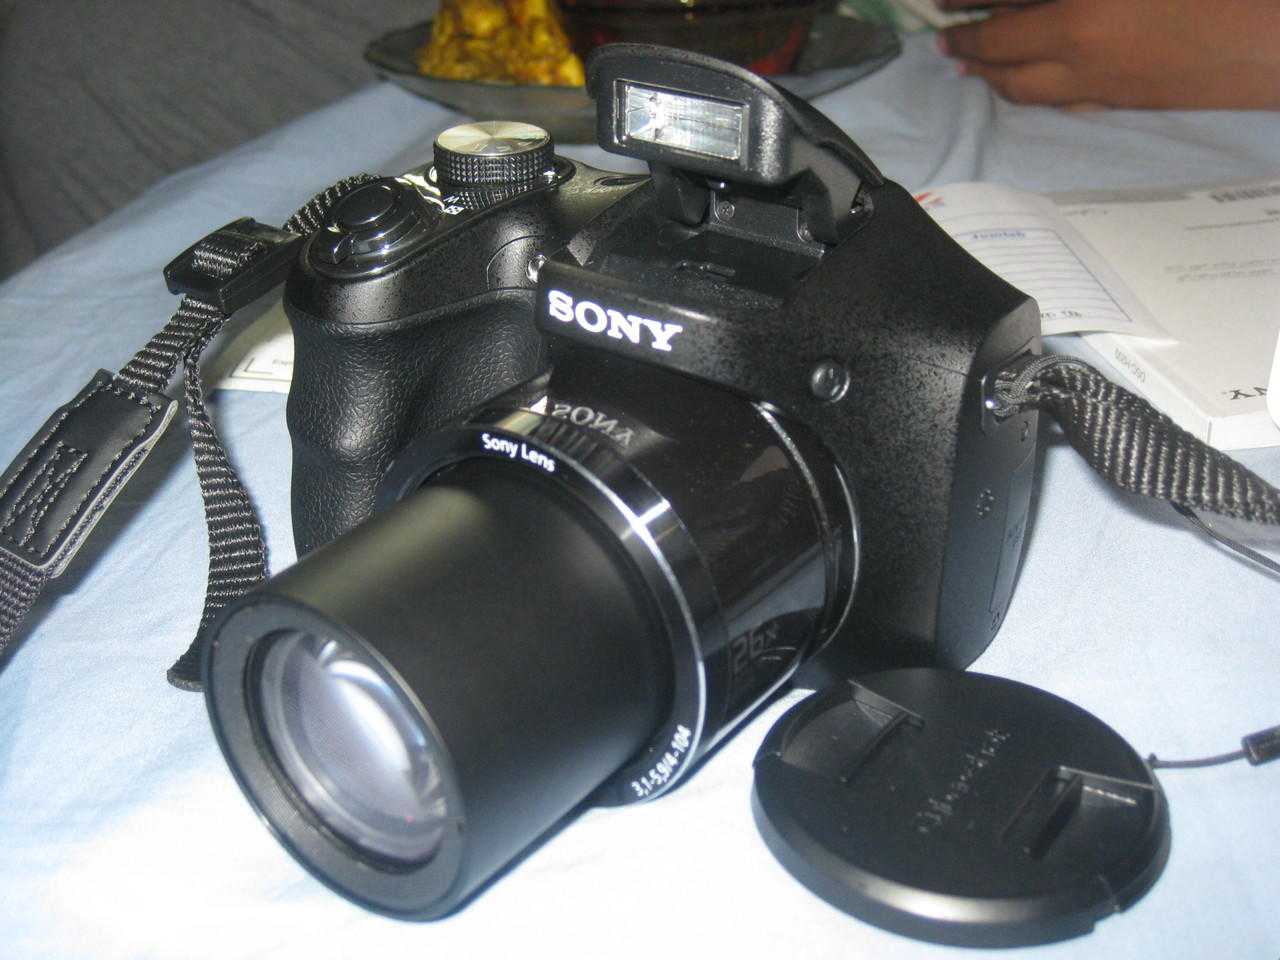 Фотоаппарат sony cyber-shot dsc-h200 — купить, цена и характеристики, отзывы